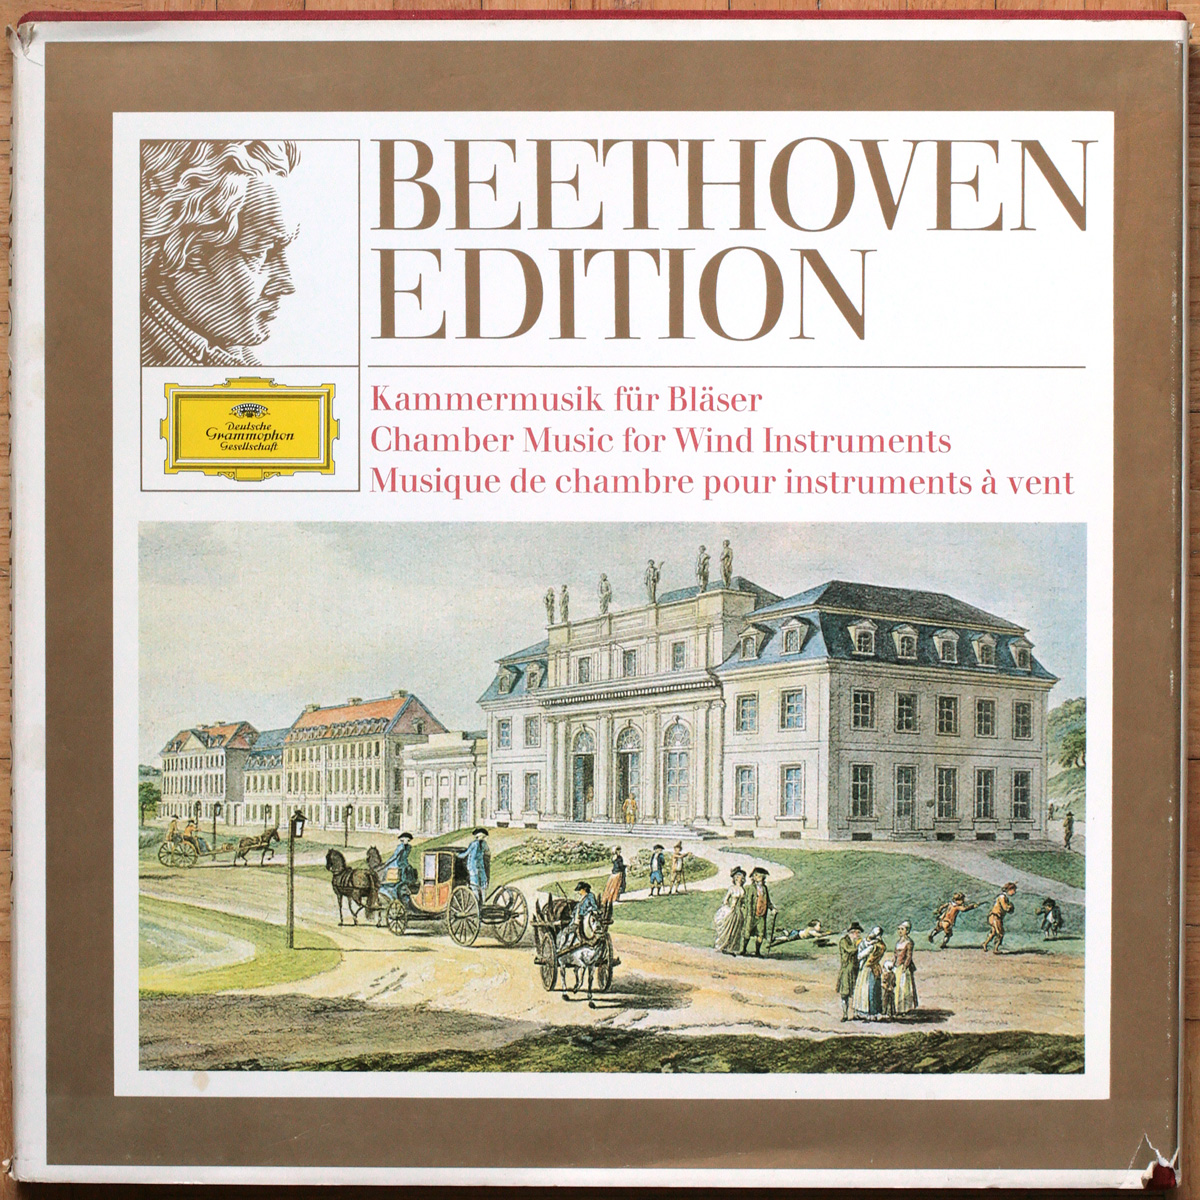 Beethoven édition • Vol. 3 • Musique de chambre pour instruments à vents • Chamber music for wind instruments • Kammermusik für Bläser